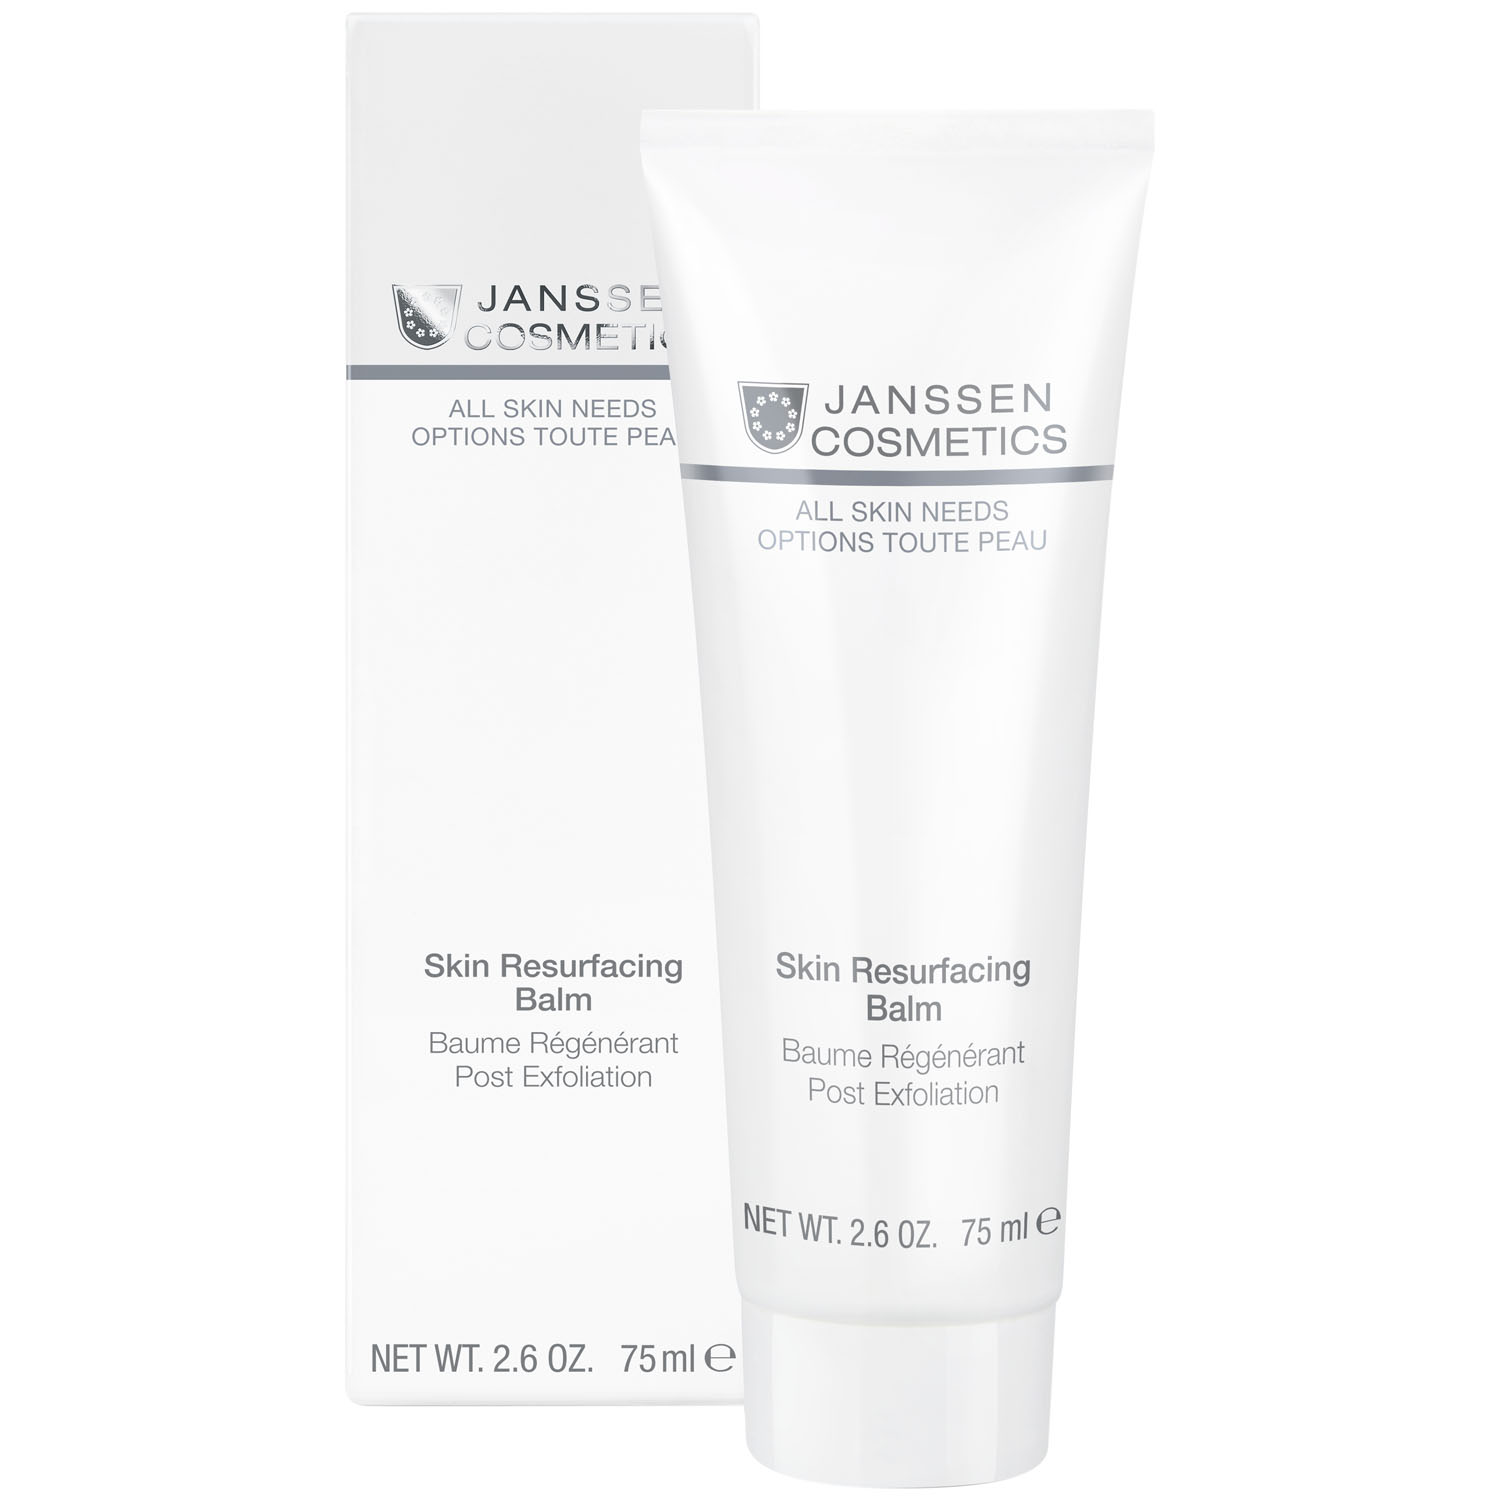 Janssen Cosmetics Фитобальзам для интенсивной регенерации кожи Skin Resurfacing Balm, 75 мл (Janssen Cosmetics, All skin needs) janssen сыворотка для выравнивания цвета кожи all skin needs 30 мл